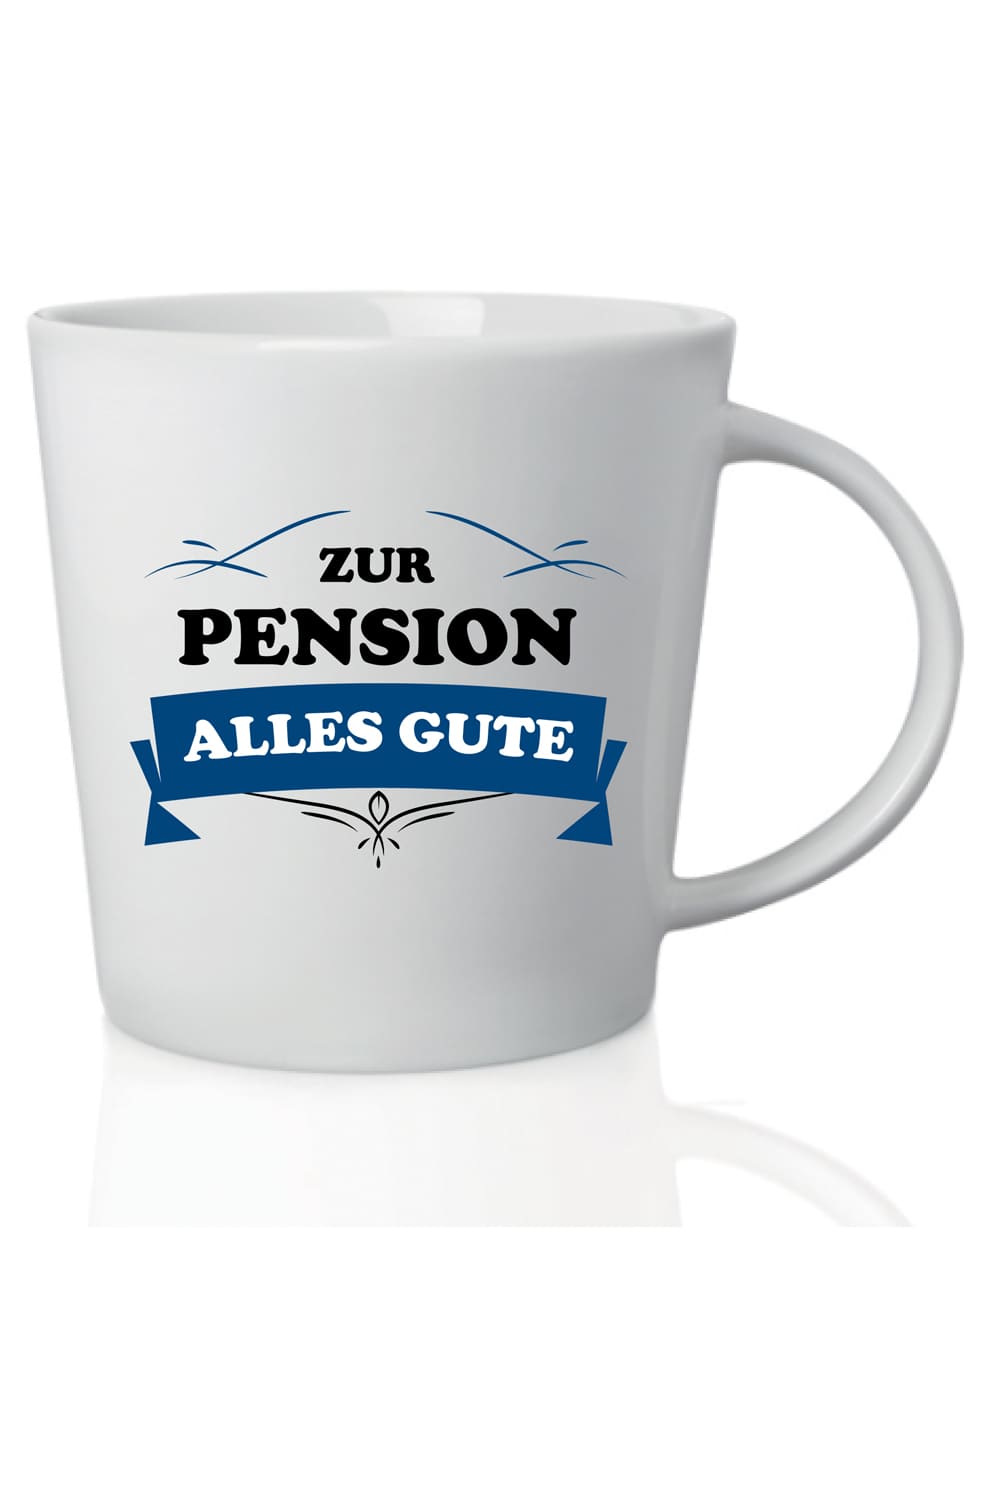 Die Spruchtasse mit der Aufschrift: Zur Pension alles Gute, ist ein grossartiges Geschenk zur Rente. Ein kreatives Tassengeschenk zur Pension und fuer alle Rentner und Rentnerinnen, die gerne Kaffee, Tee oder Ovomaltine trinken.